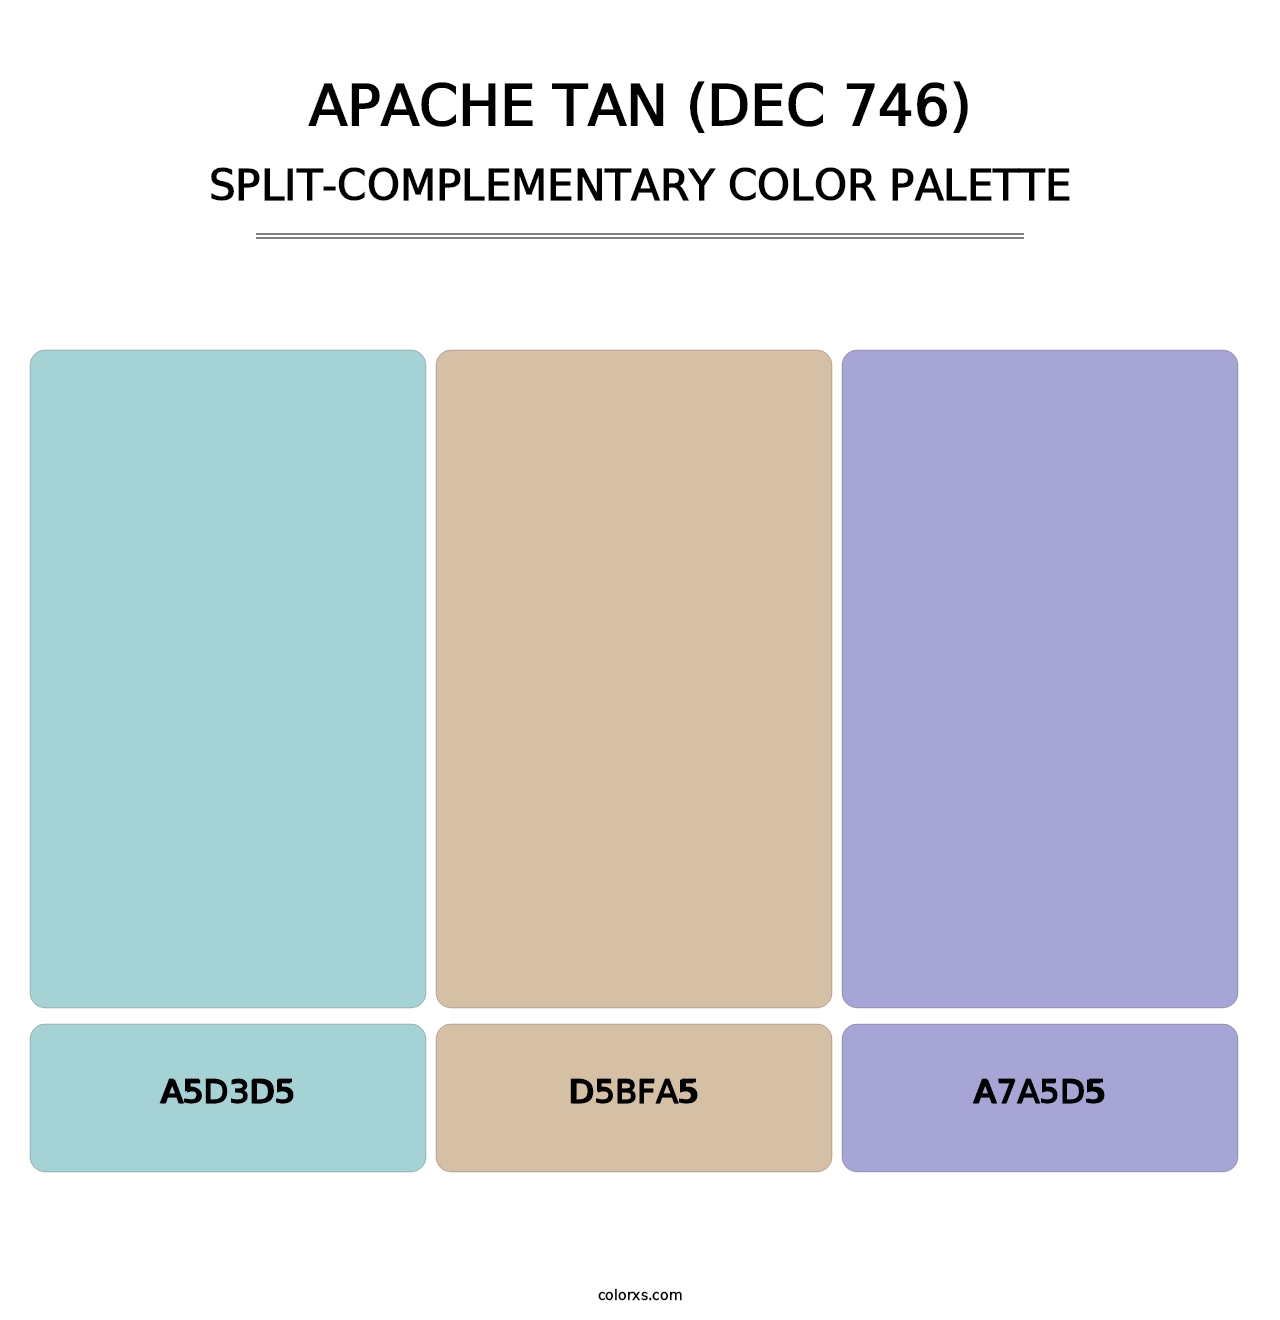 Apache Tan (DEC 746) - Split-Complementary Color Palette